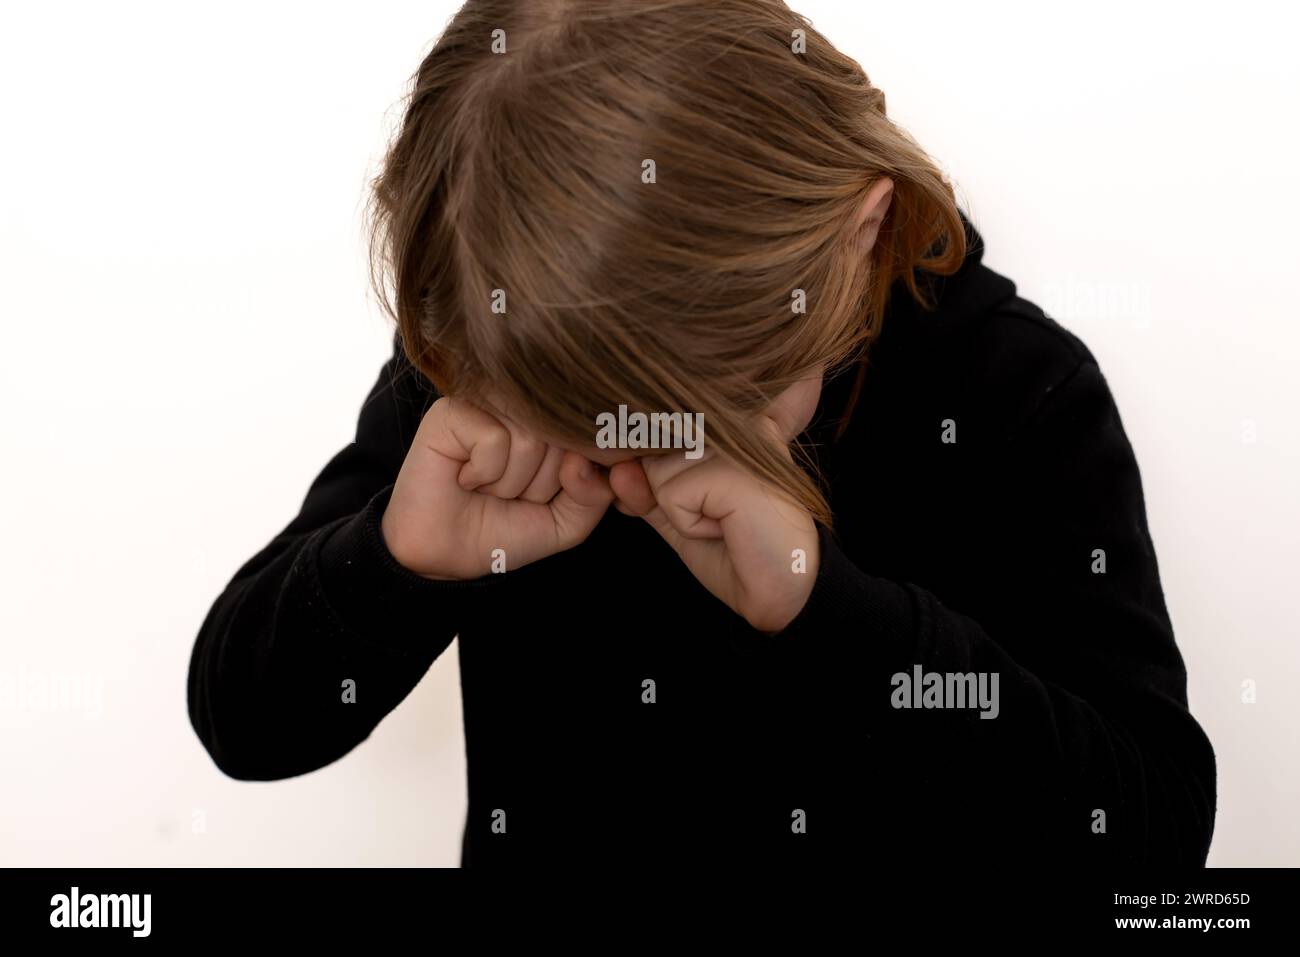 Un jeune garçon, privé de sommeil et aux cheveux longs, révèle un troisième œil fatigué, placé sur un fond de blanc pur Banque D'Images